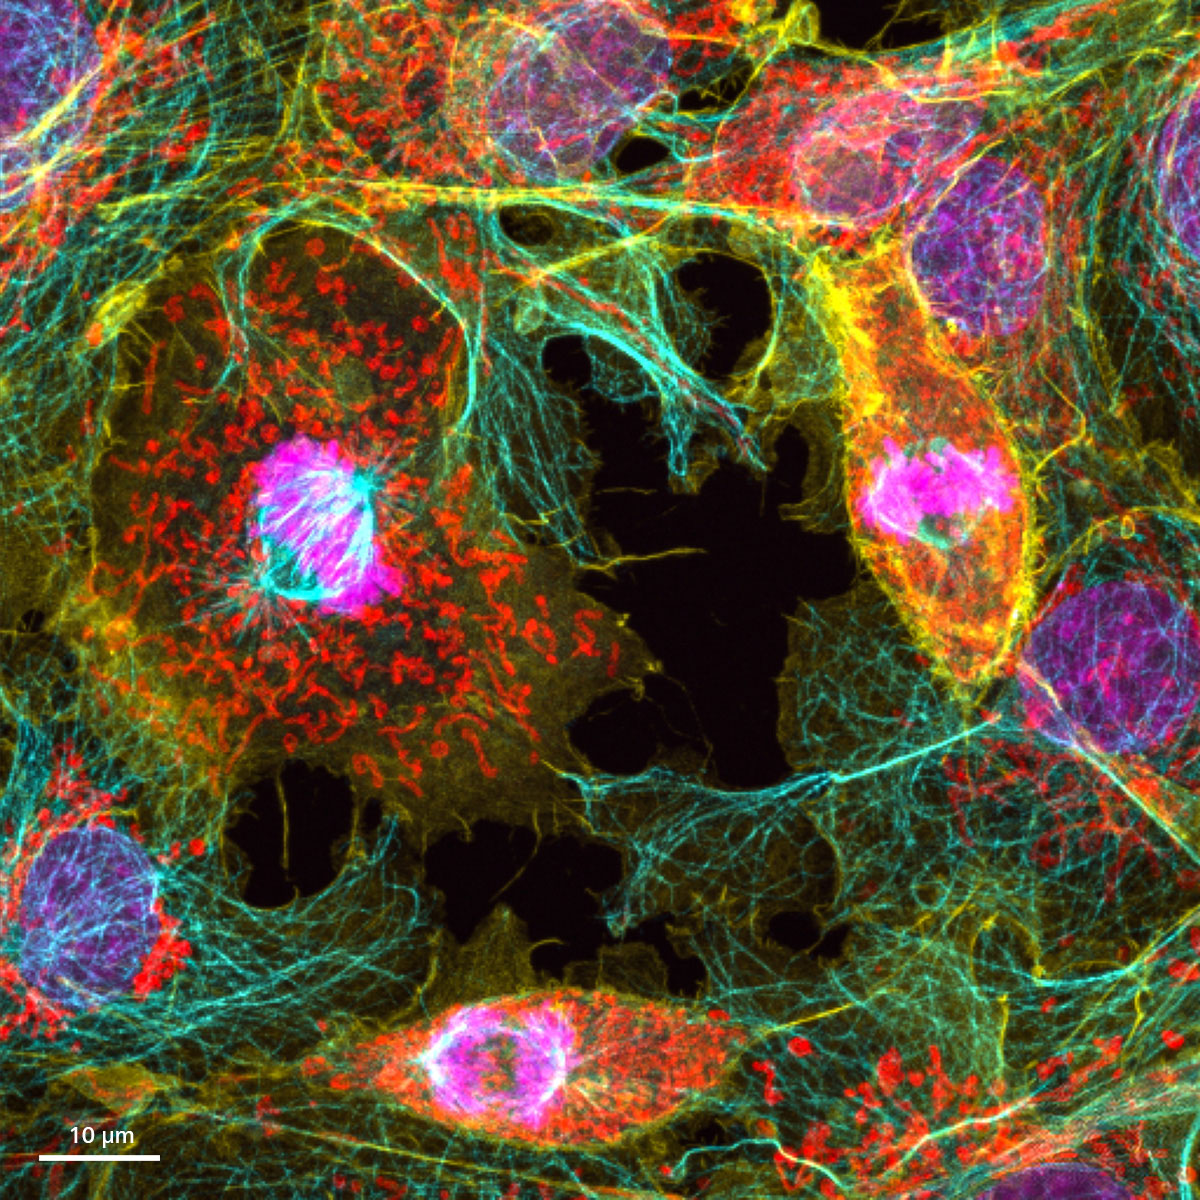 Cellules COS-7, DAPI (magenta), anti-tubuline Alexa 568 (bleu), actine phalloïdine-OG488 (jaune) et Tom20-Alexa 750 (rouge). Échantillon : avec l'aimable autorisation de Urs Ziegler et Jana Doehner, Université de Zurich, ZMB, Suisse.